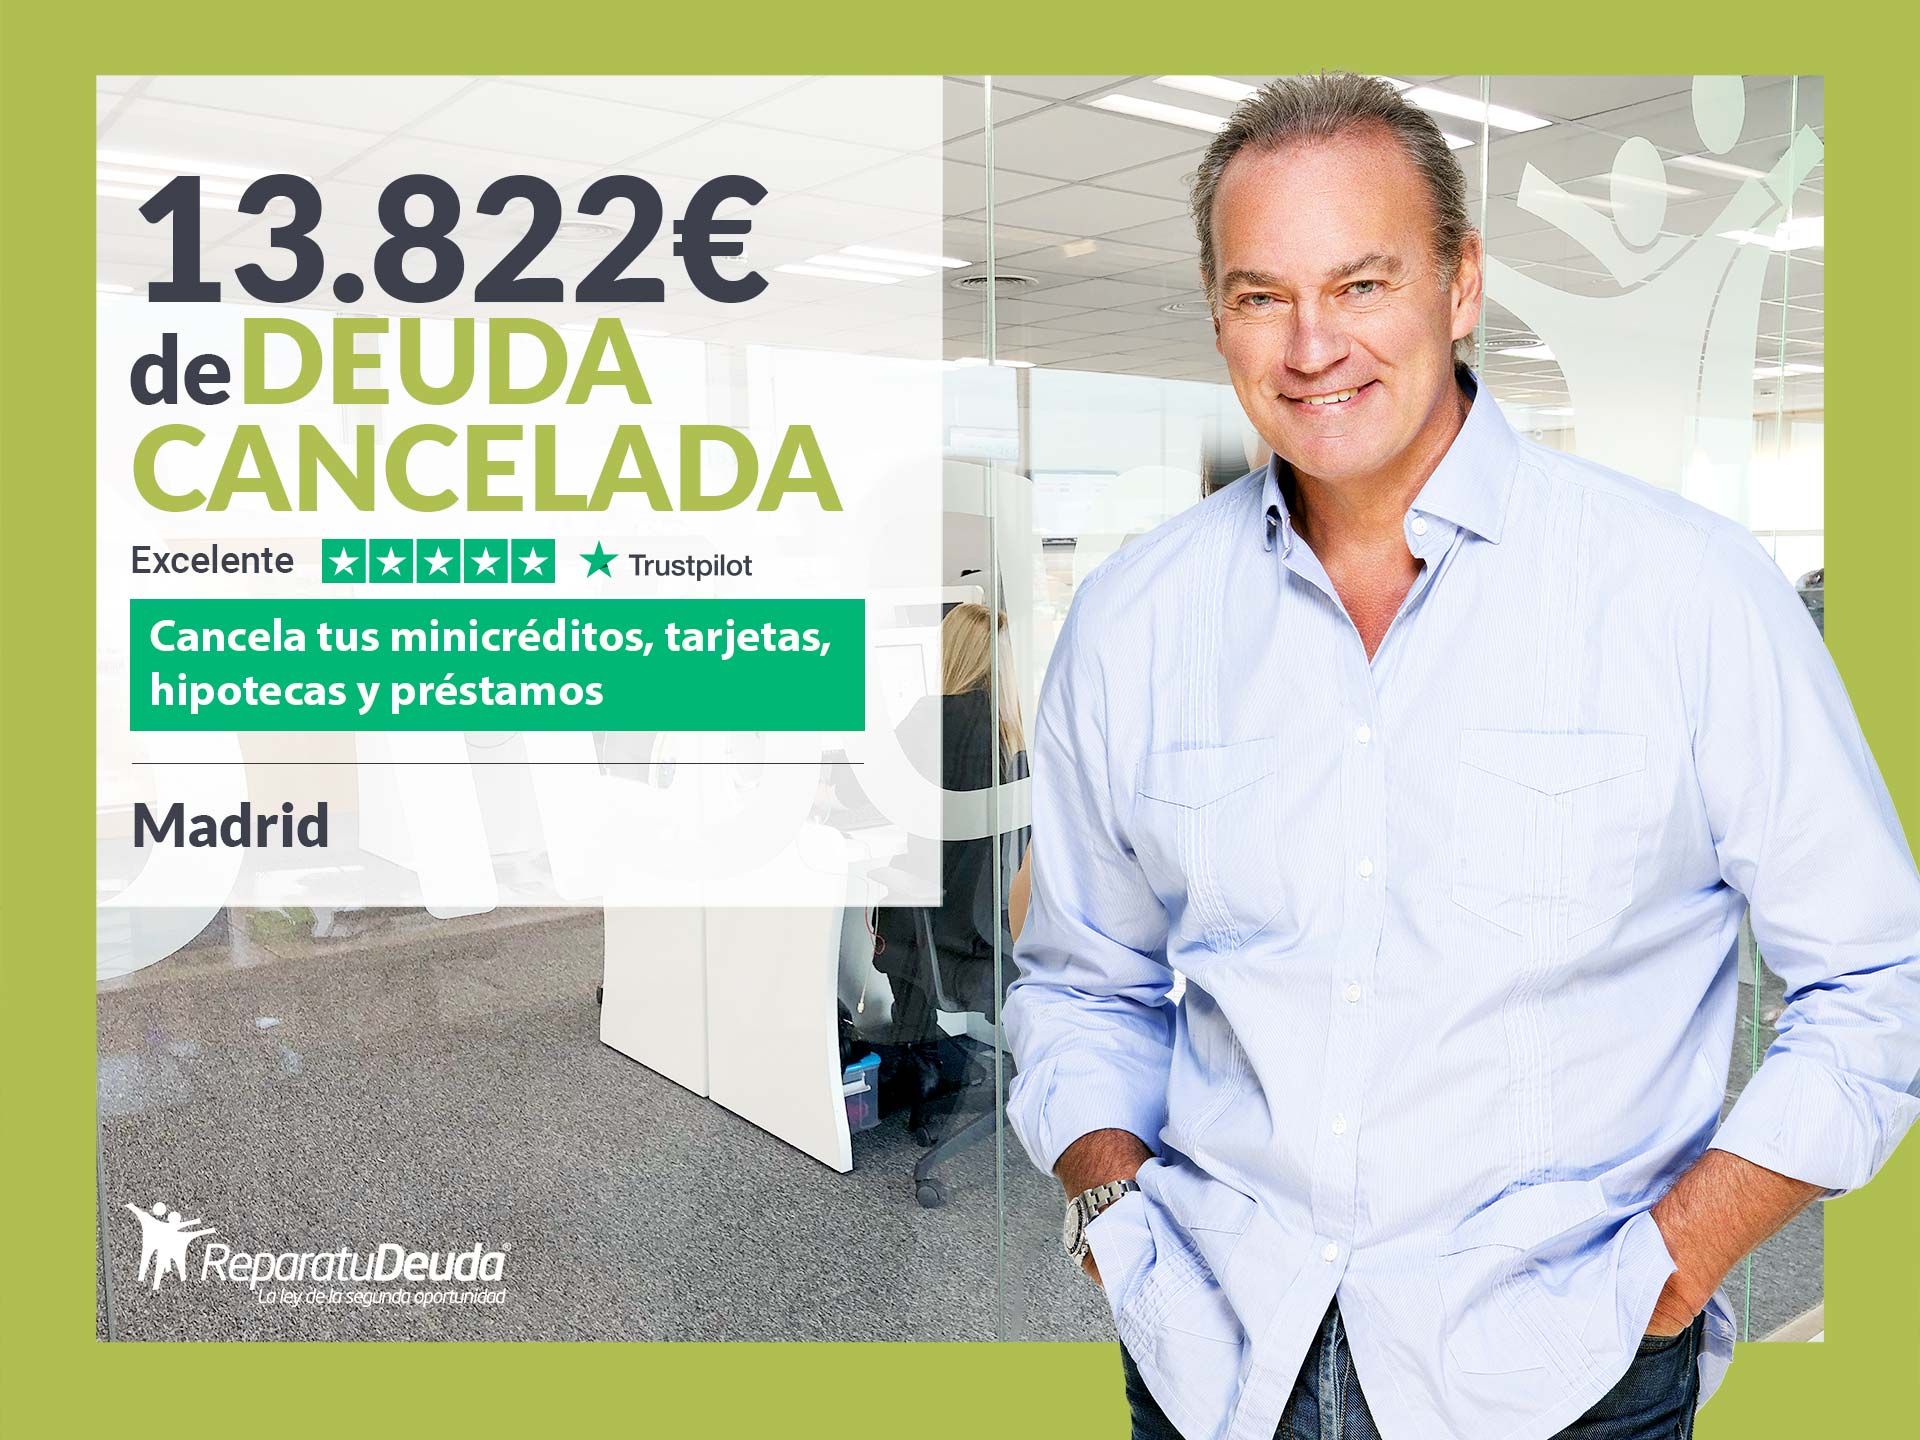 Repara tu Deuda Abogados cancela 13.822? en Madrid con la Ley de Segunda Oportunidad